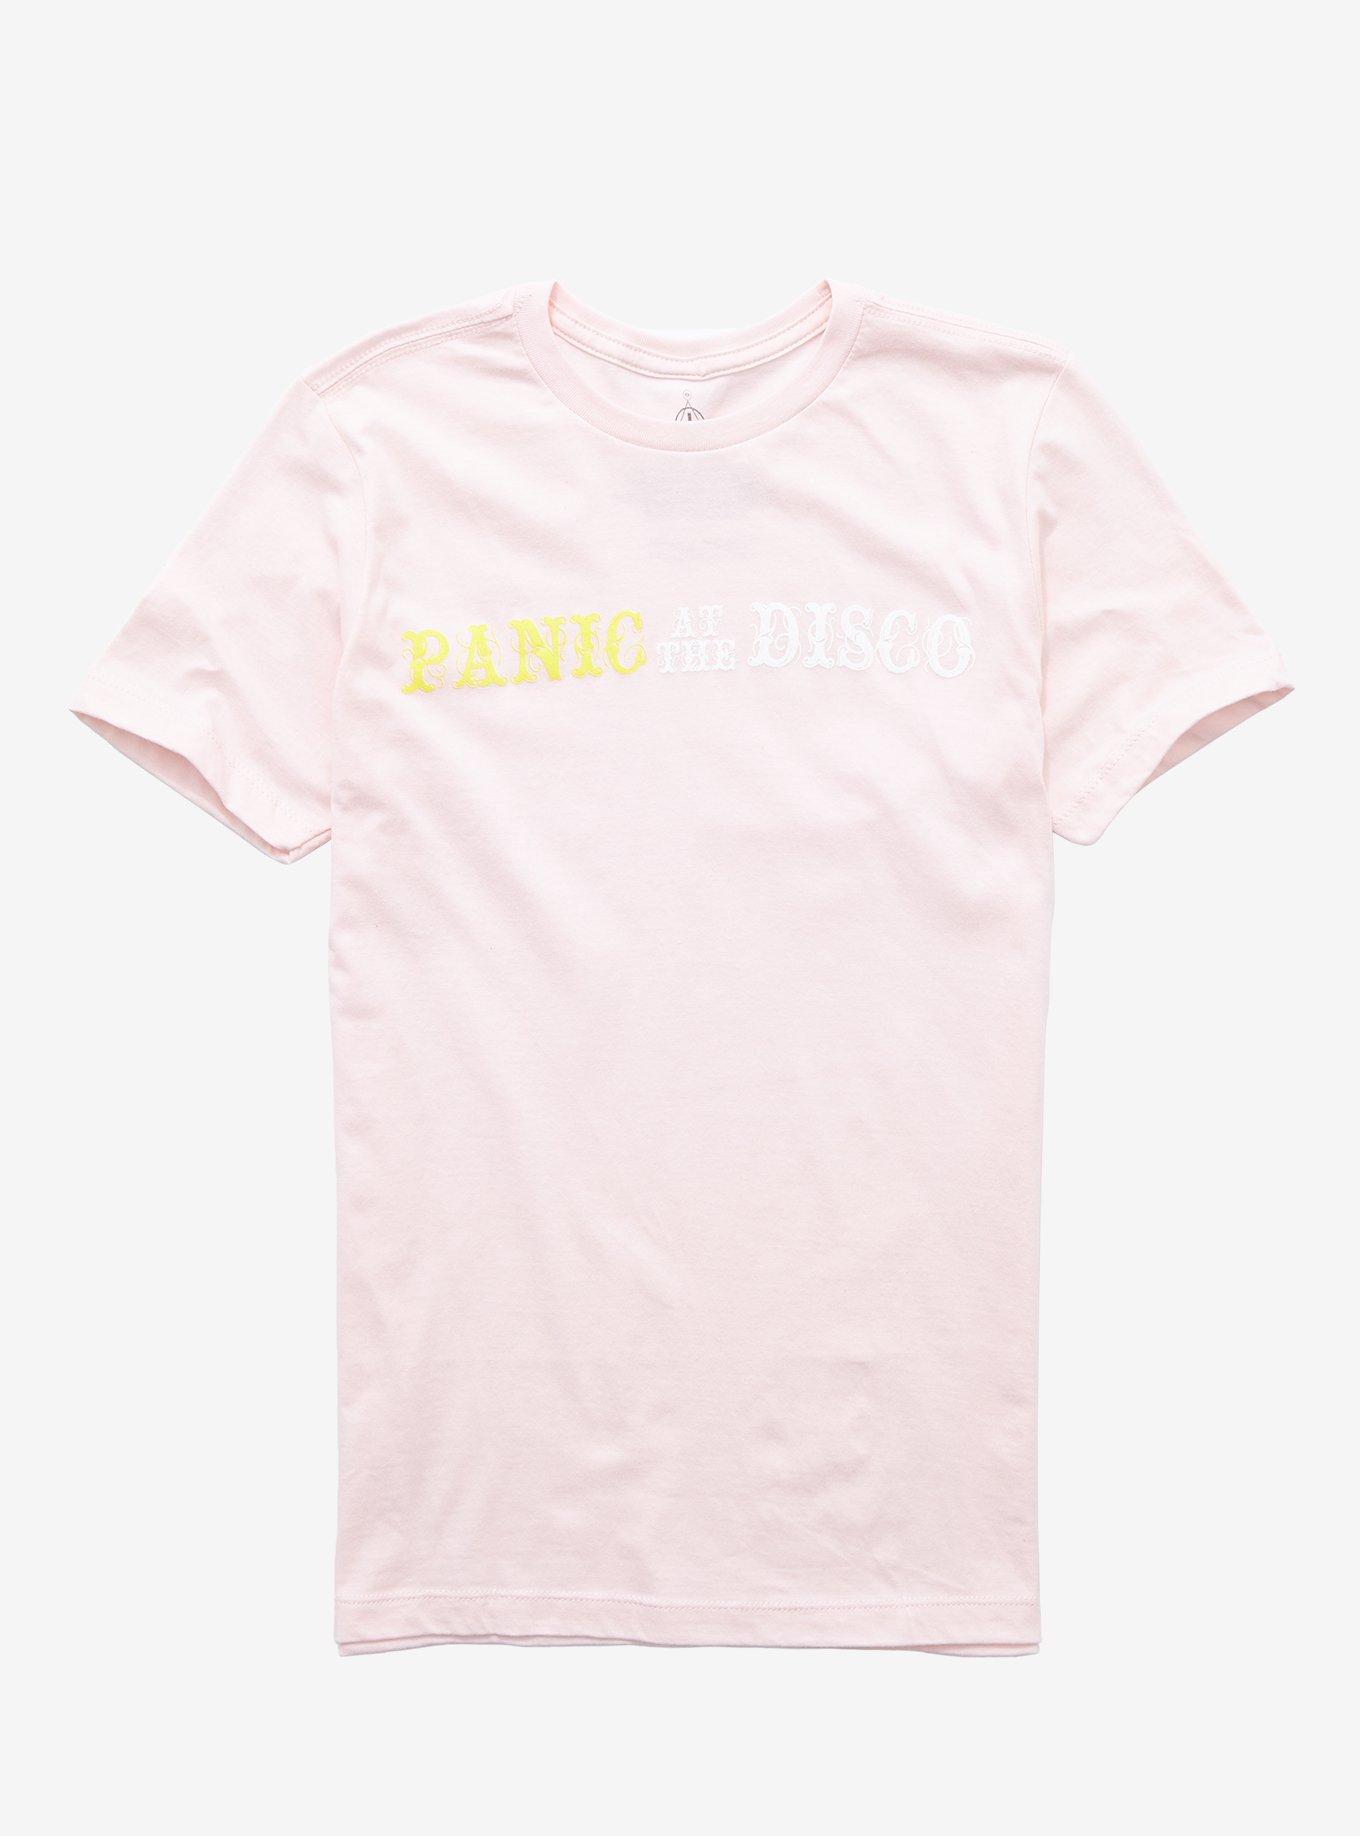 Panic! At The Disco Pastel Girls T-Shirt, PINK, hi-res